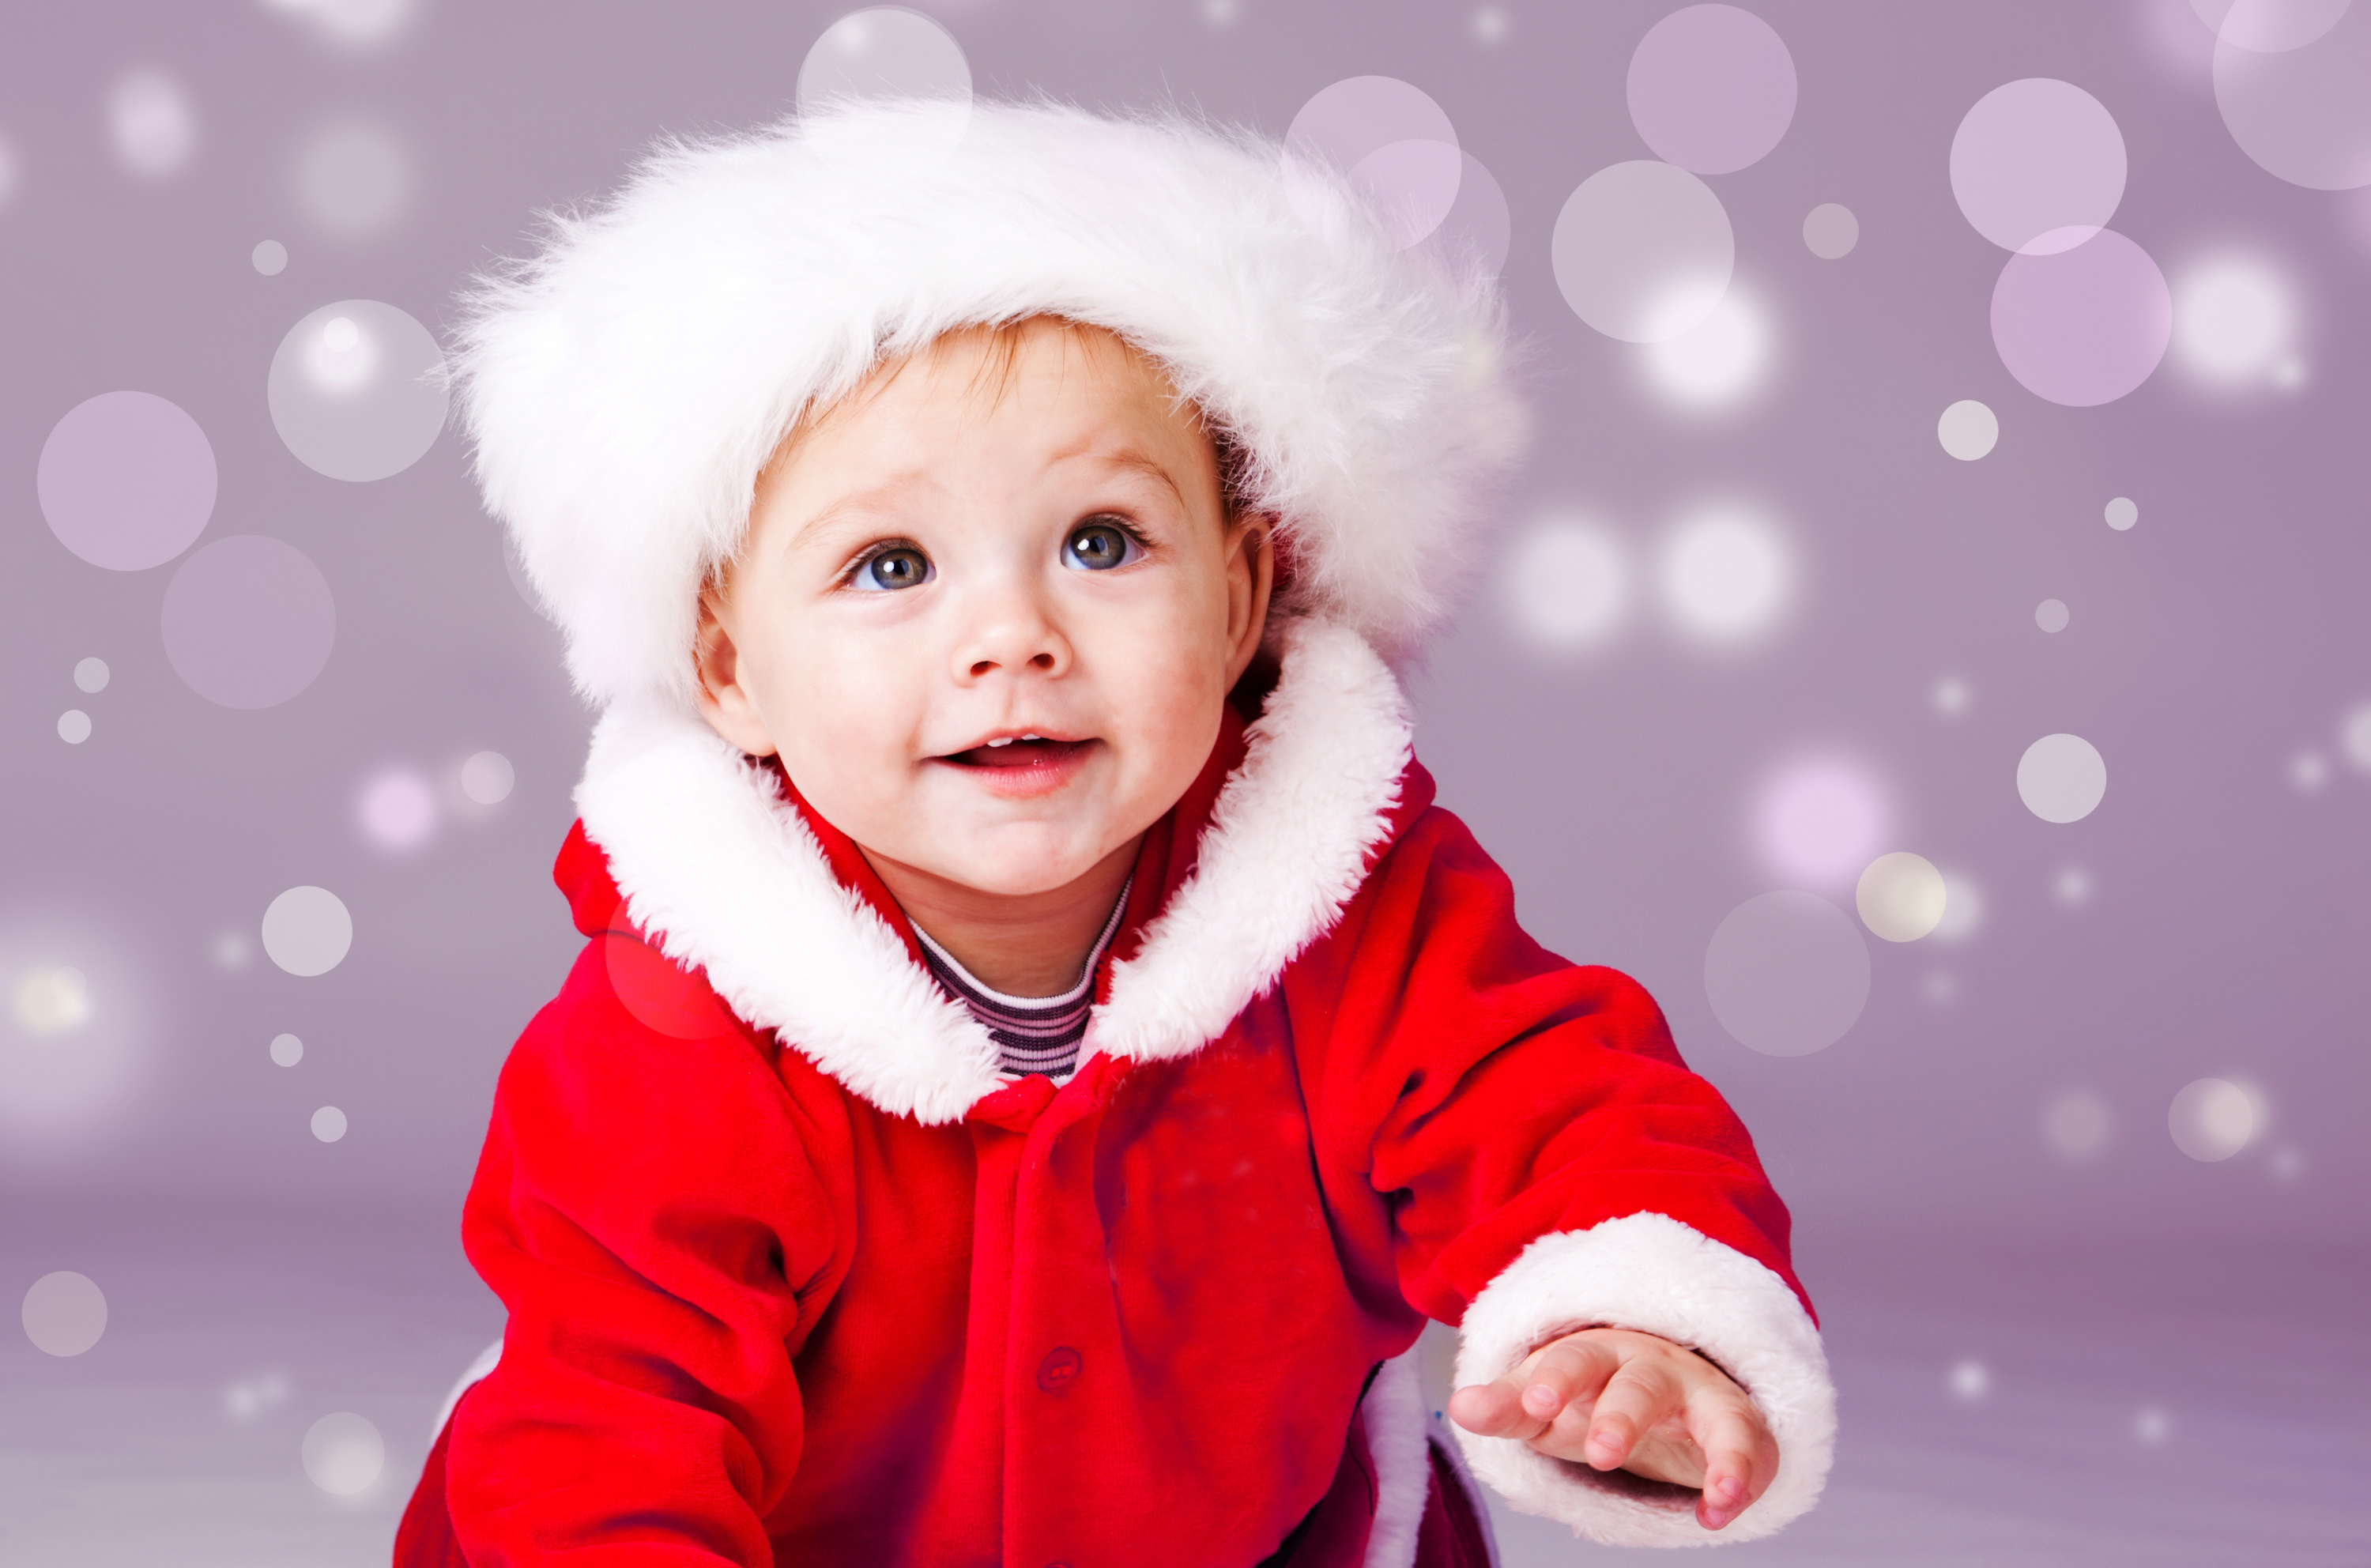 kleine kinder wallpaper,kind,weihnachten,kleinkind,glücklich,lächeln